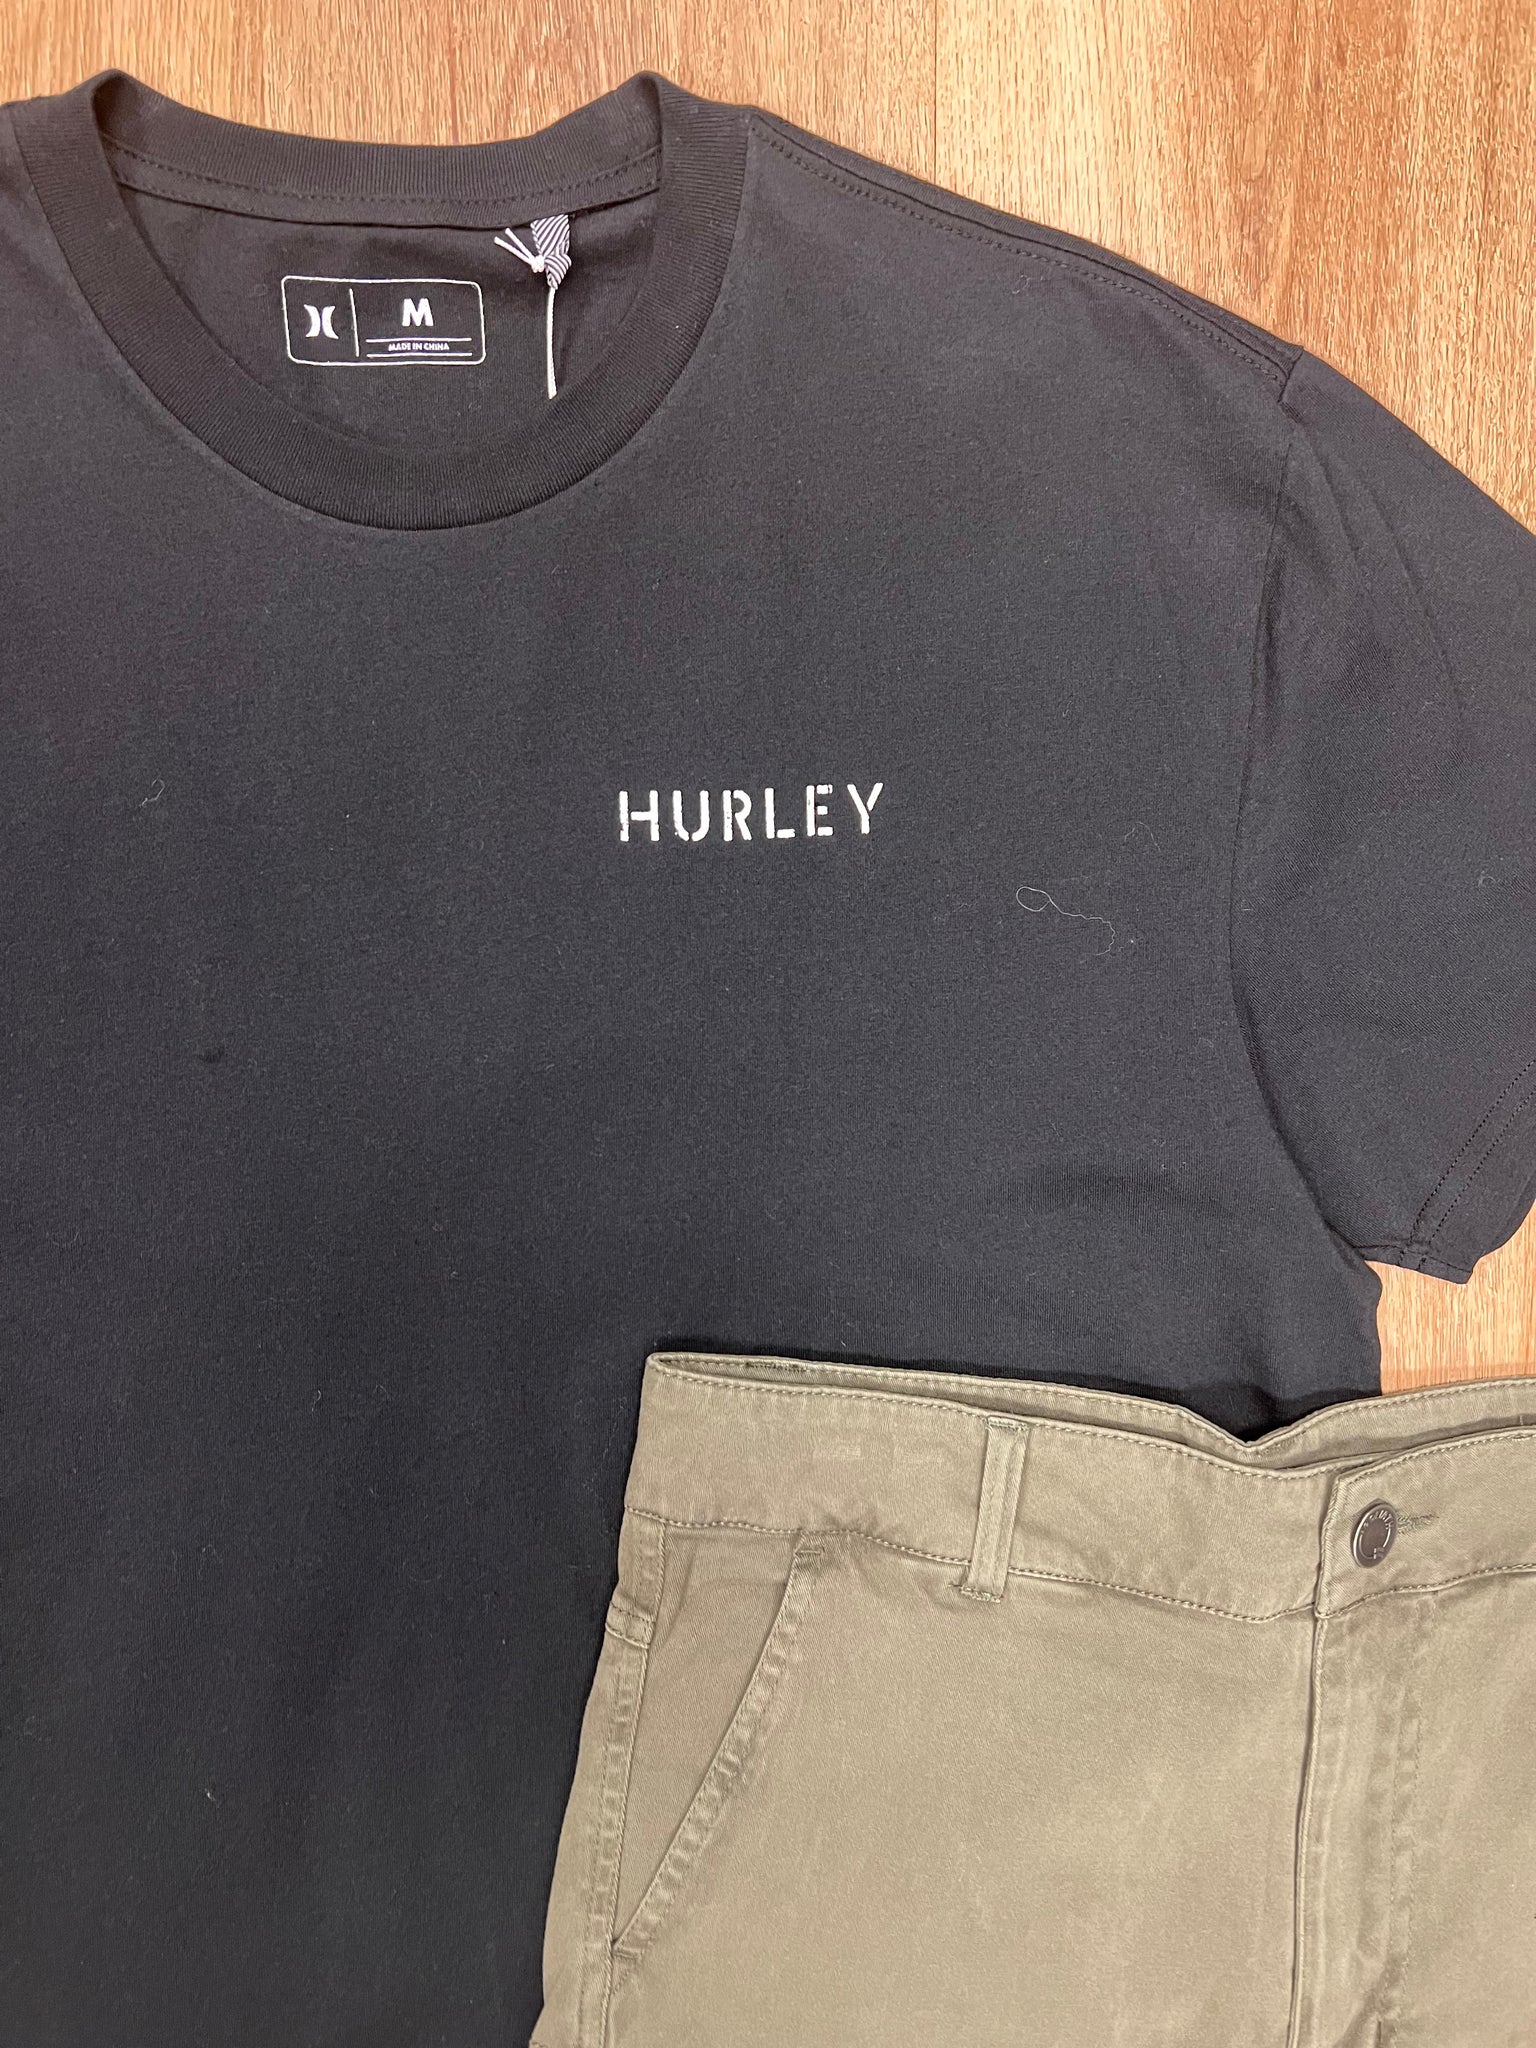 HURLEY - HOURGLASS TEE